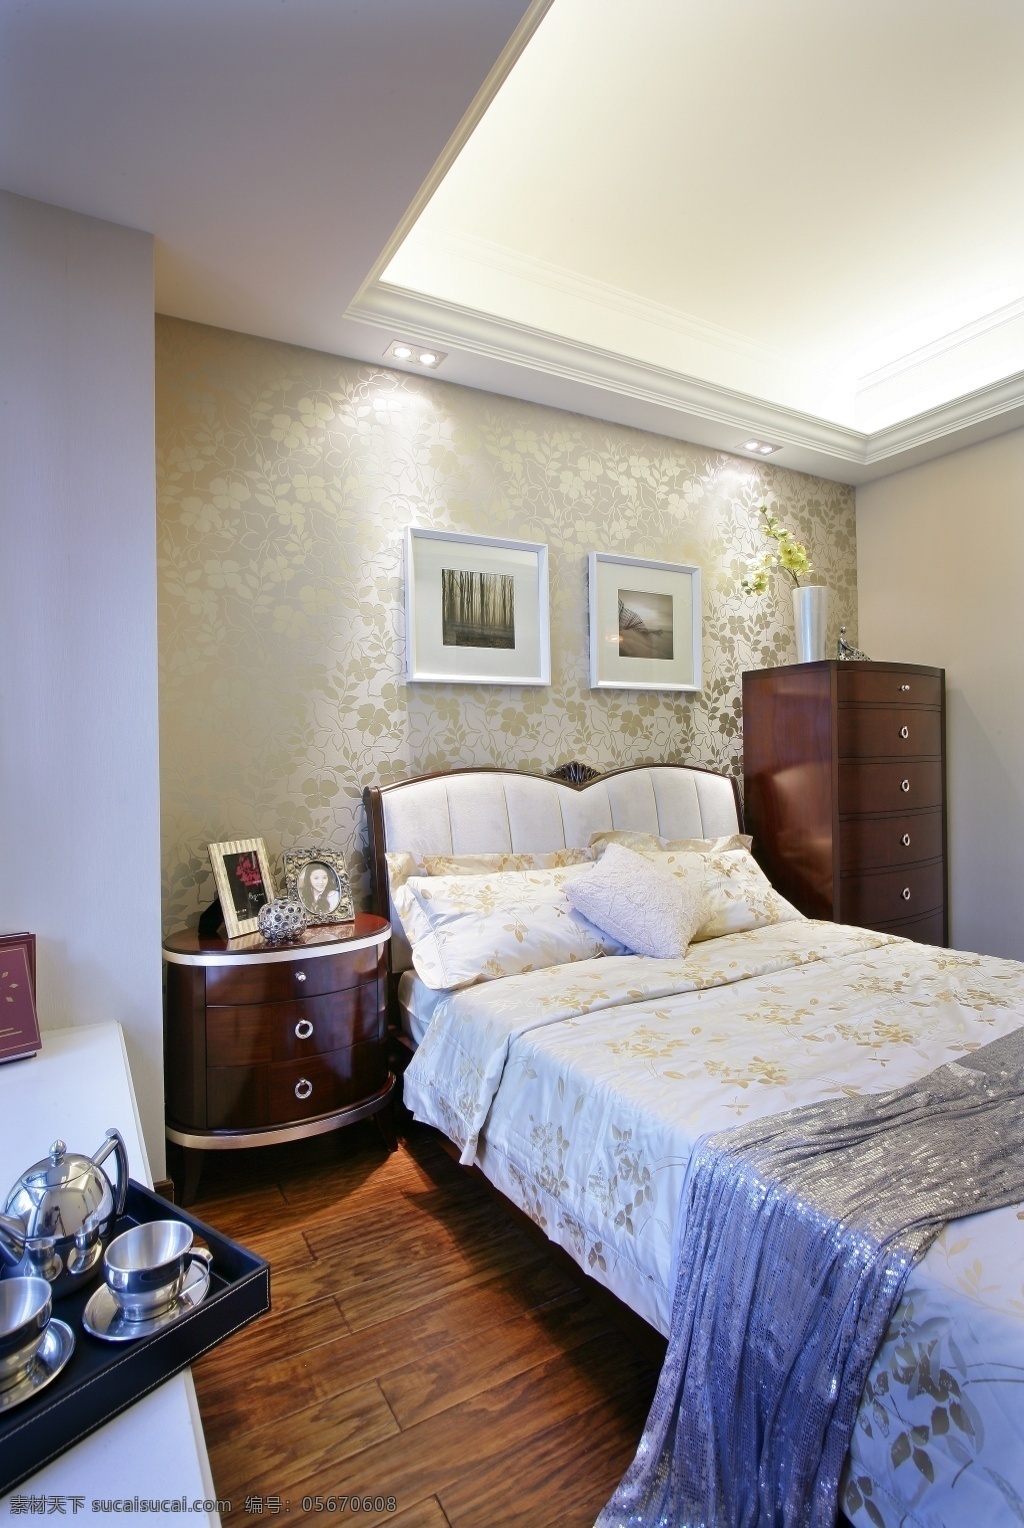 别墅 室内 卧室 现代 舒适 装修 效果图 实木地板 舒适大床 创意台灯 实用飘窗 集成墙面